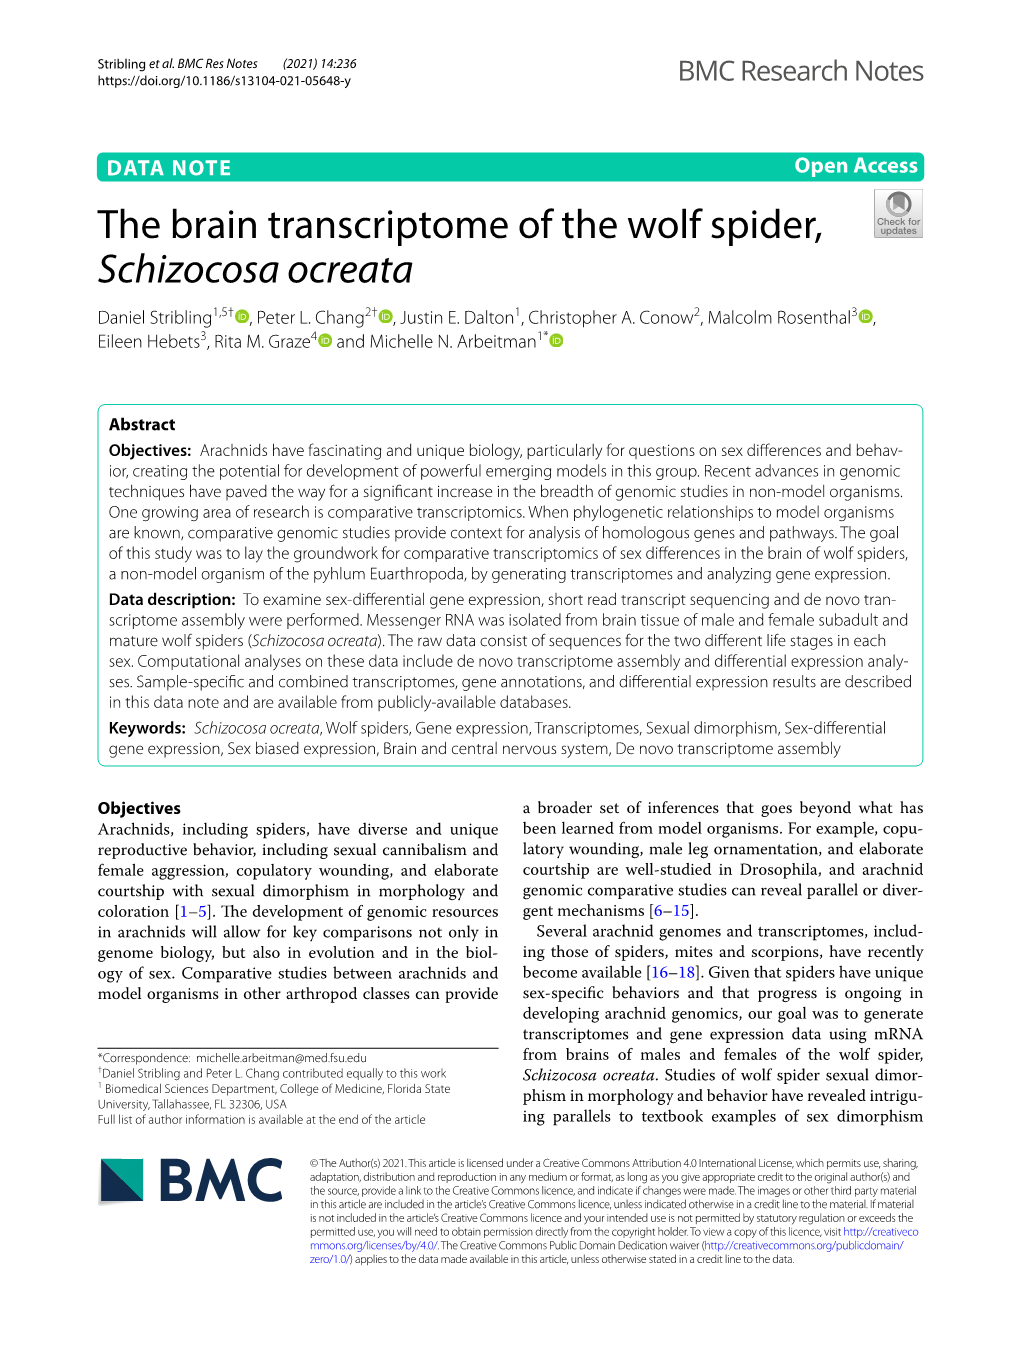 The Brain Transcriptome of the Wolf Spider, Schizocosa Ocreata Daniel Stribling1,5† , Peter L